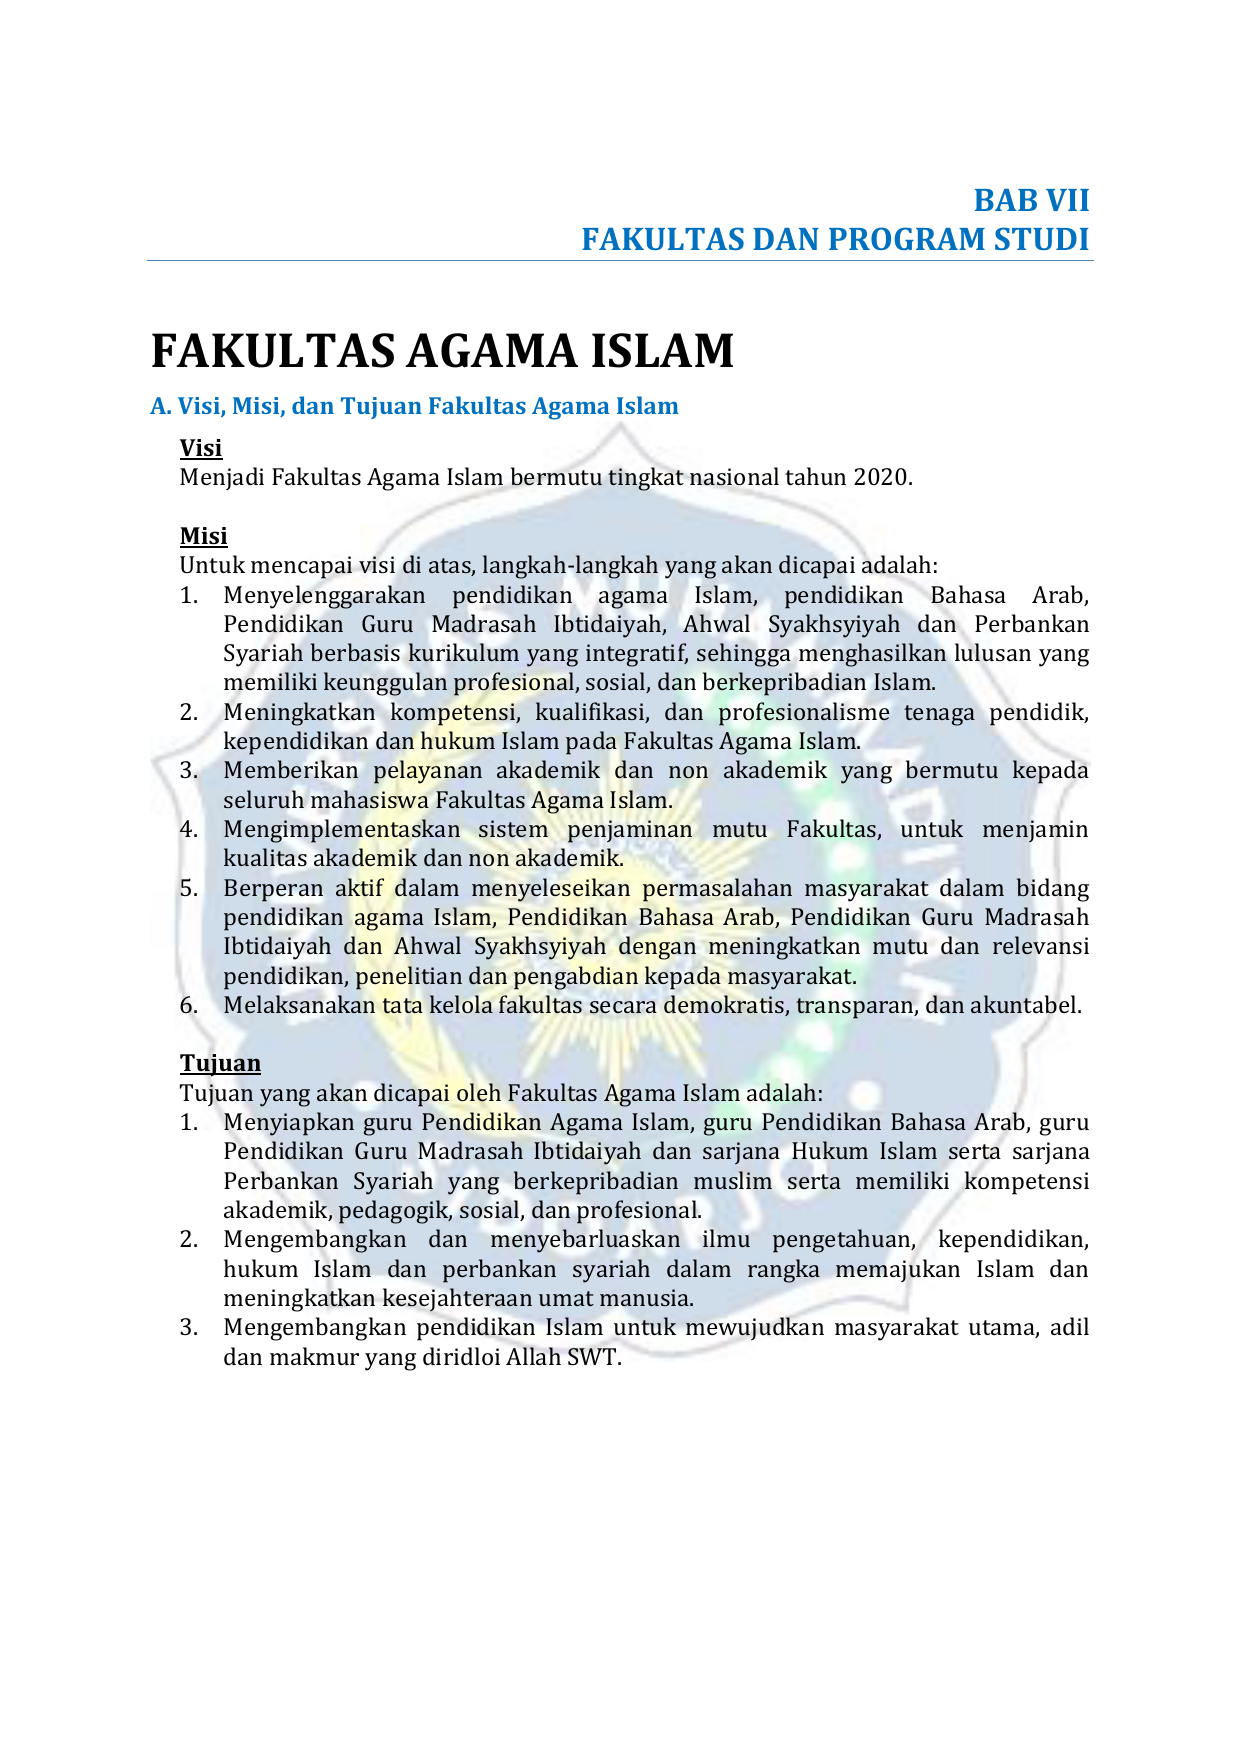 PROGRAM STUDI FAKULTAS AGAMA ISLAM A Visi Misi dan Tujuan Fakultas Agama Islam Visi Menjadi Fakultas Agama Islam bermutu tingkat nasional tahun 2020